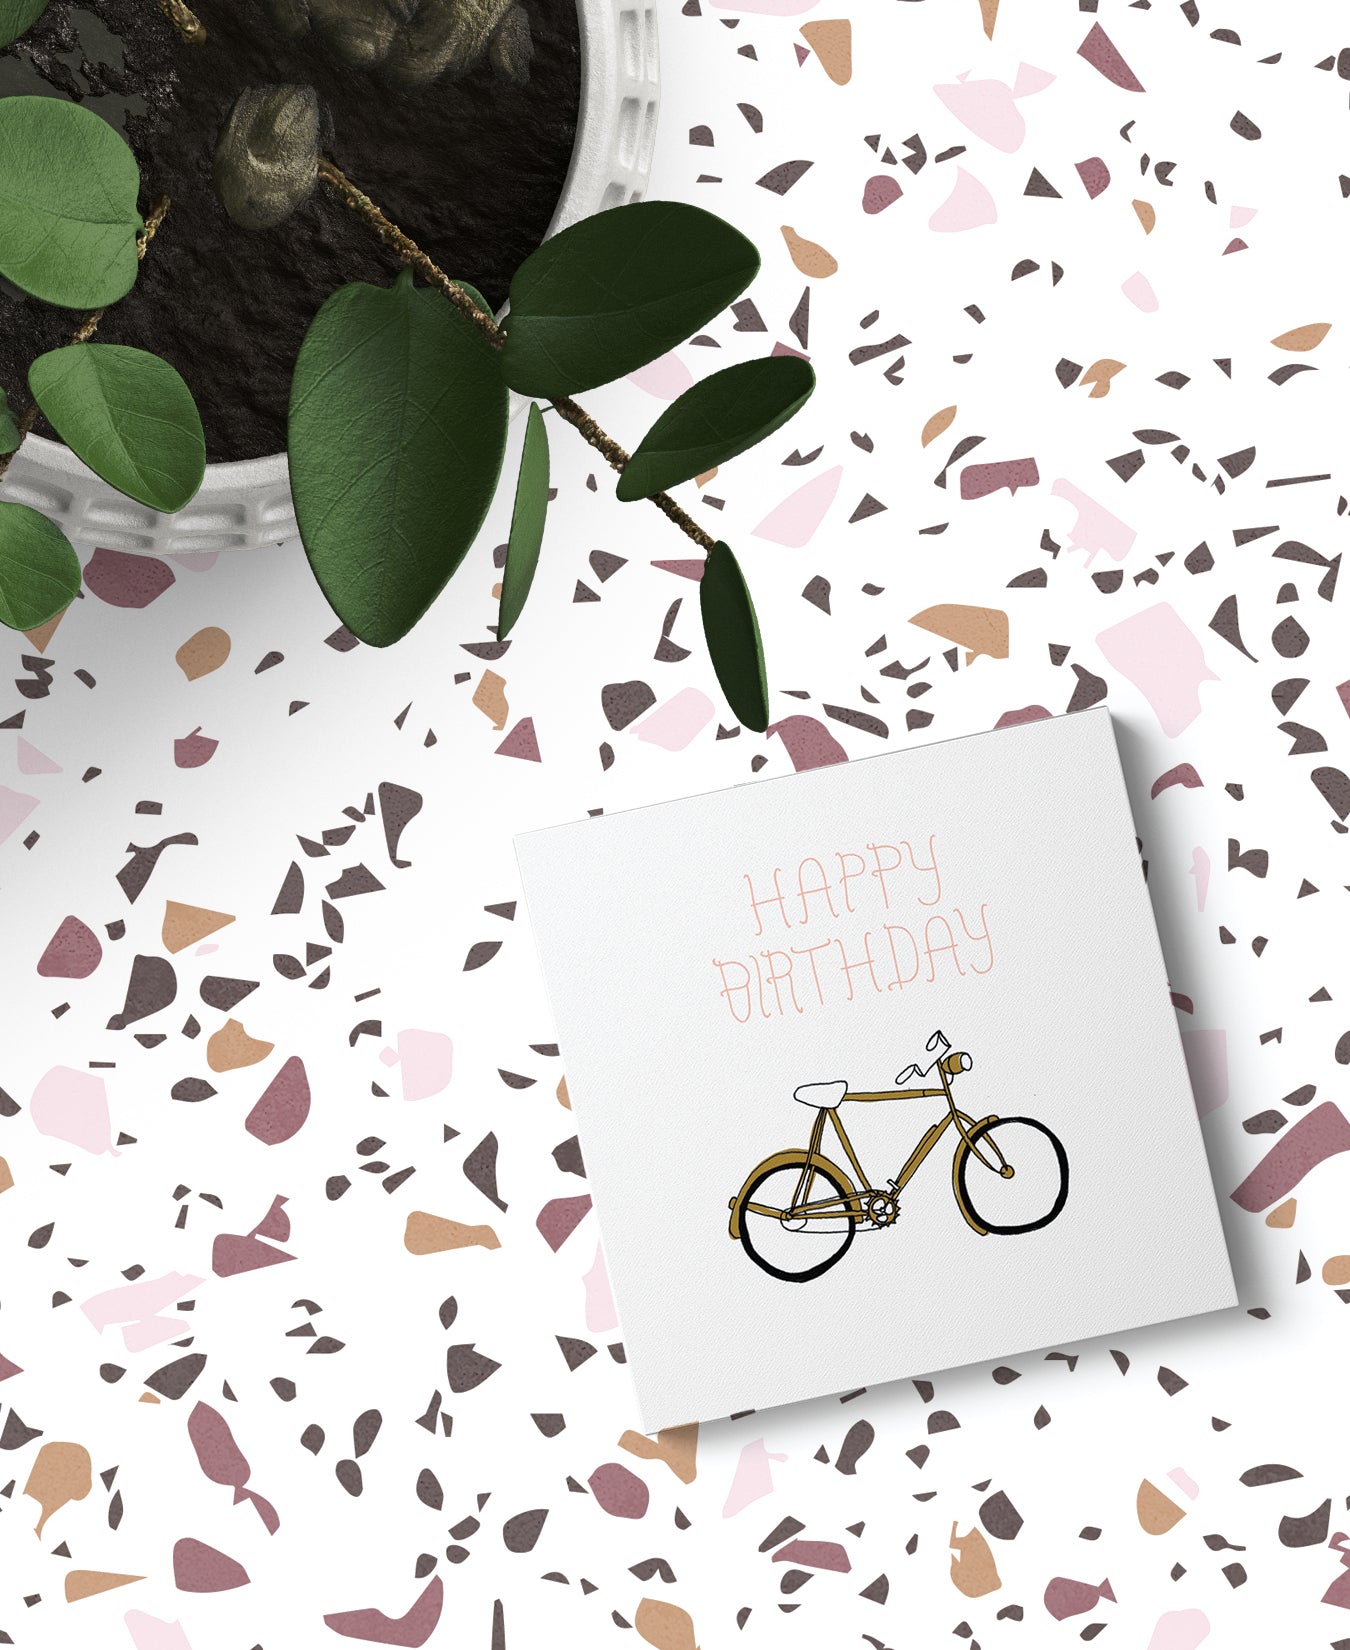 Happy Birthday Bicycle